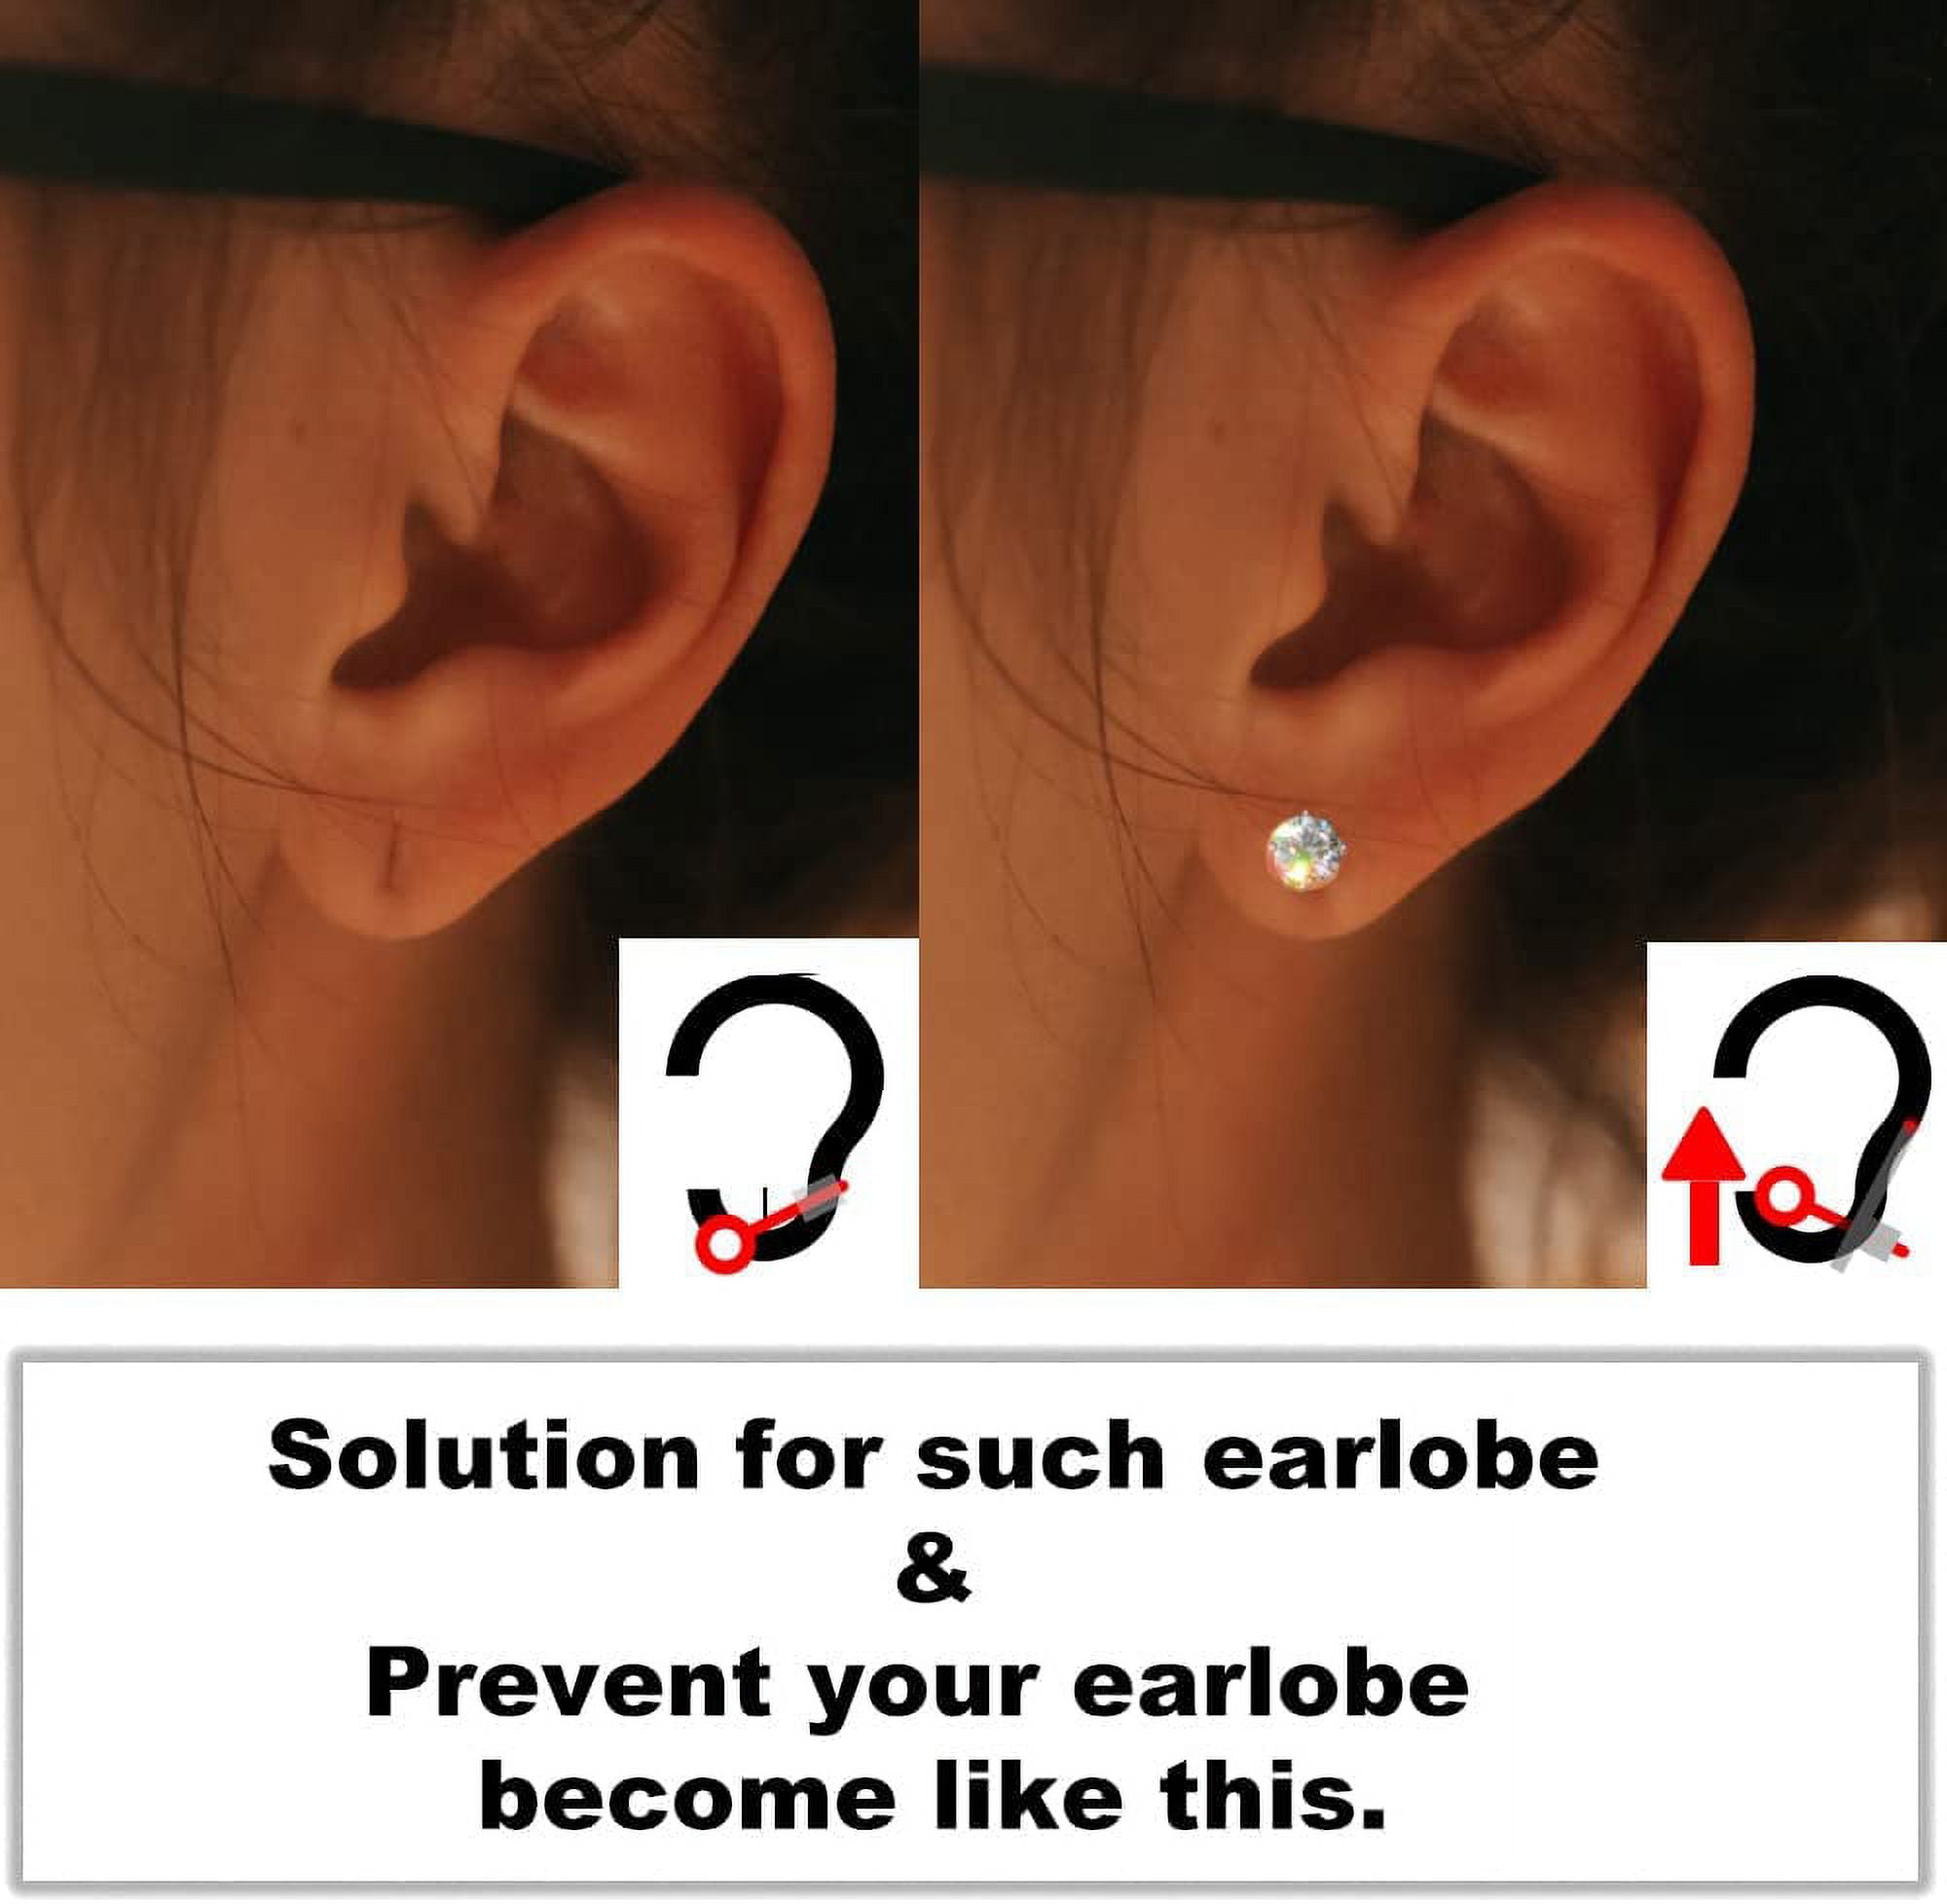  Earring Lifters - Earring Backs Lifts Heavy Stud